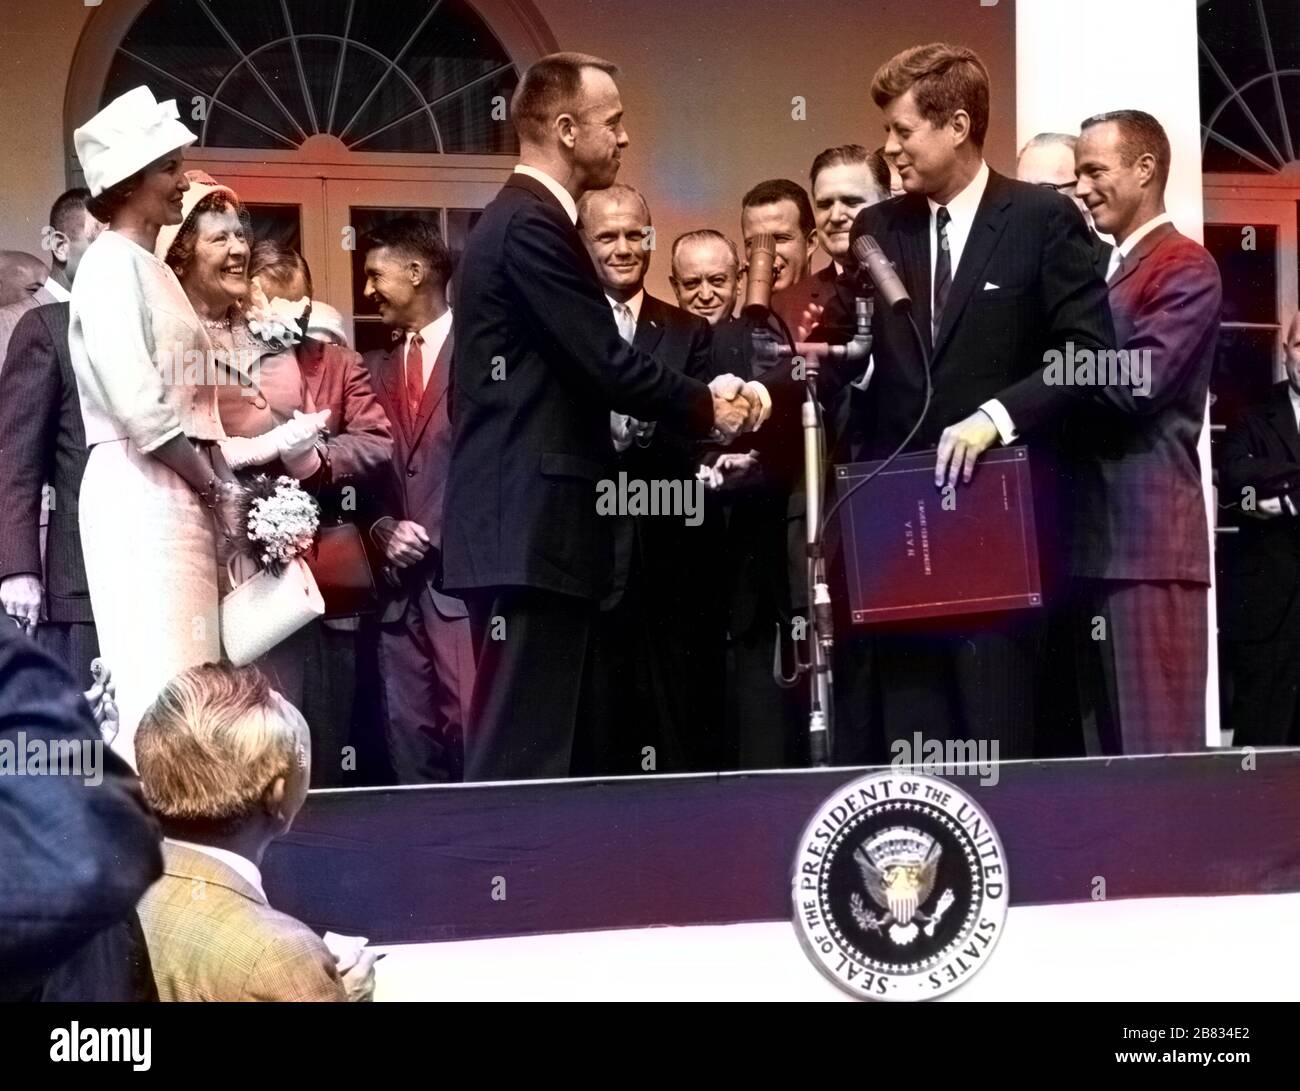 Le président John F. Kennedy félicite l'astronaute Alan B. Shepard Jr., le premier américain dans l'espace, pour sa promenade historique dans le vaisseau spatial Freedom 7, White House, Washington, District of Columbia, le 8 mai 1961. Image reproduite avec l'aimable autorisation de la National Aeronautics and Space Administration (NASA). Remarque : l'image a été colorisée numériquement à l'aide d'un processus moderne. Les couleurs peuvent ne pas être précises sur une période donnée. () Banque D'Images